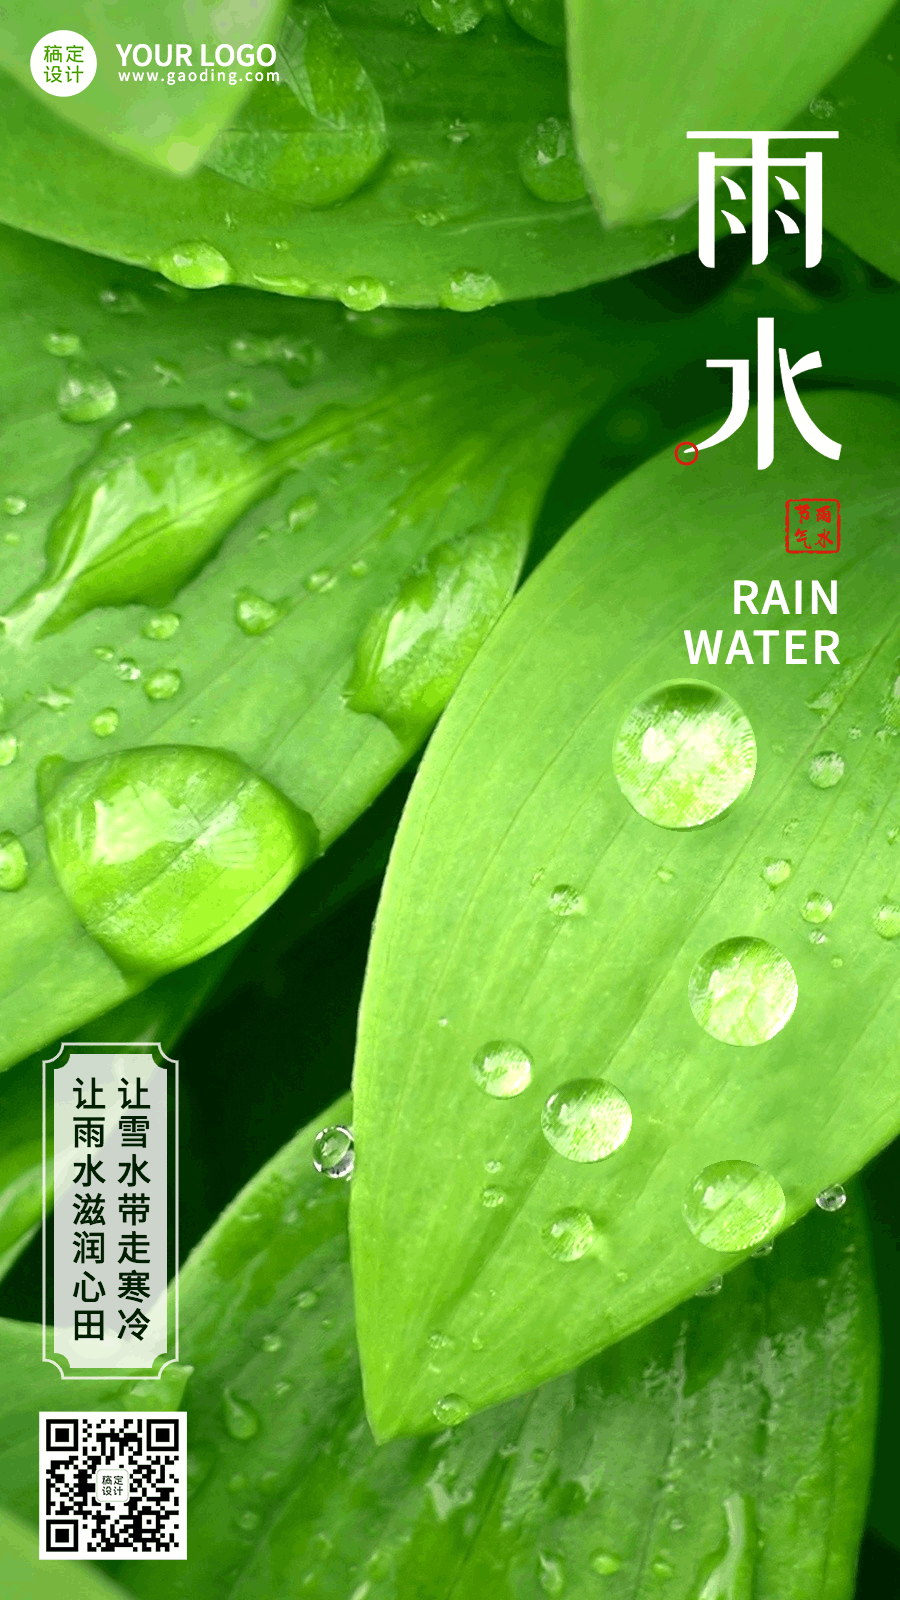 雨水节气实景特写露珠GIF动态海报预览效果